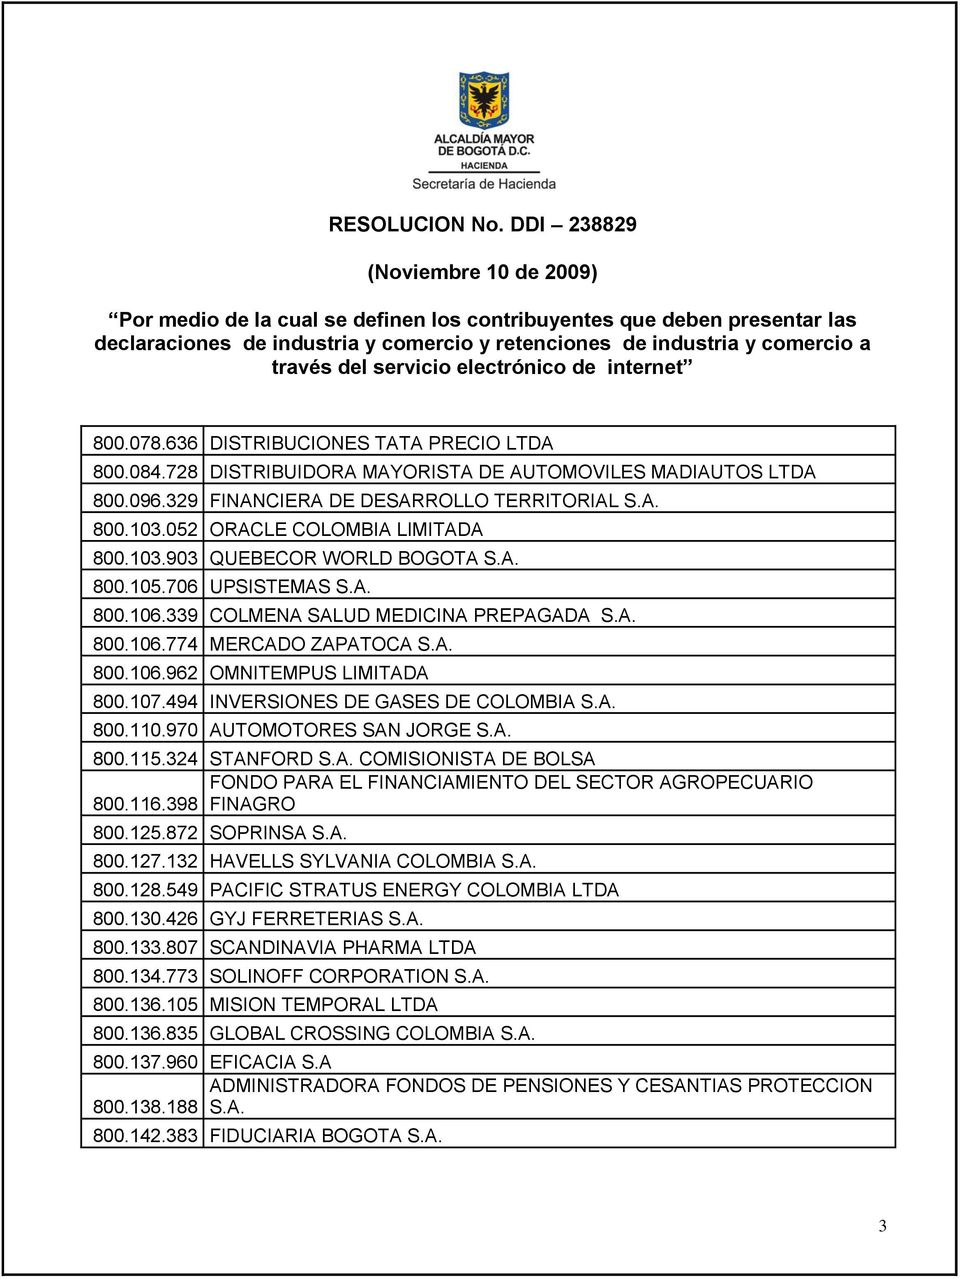 107.494 INVERSIONES DE GASES DE COLOMBIA S.A. 800.110.970 AUTOMOTORES SAN JORGE S.A. 800.115.324 STANFORD S.A. COMISIONISTA DE BOLSA FONDO PARA EL FINANCIAMIENTO DEL SECTOR AGROPECUARIO 800.116.